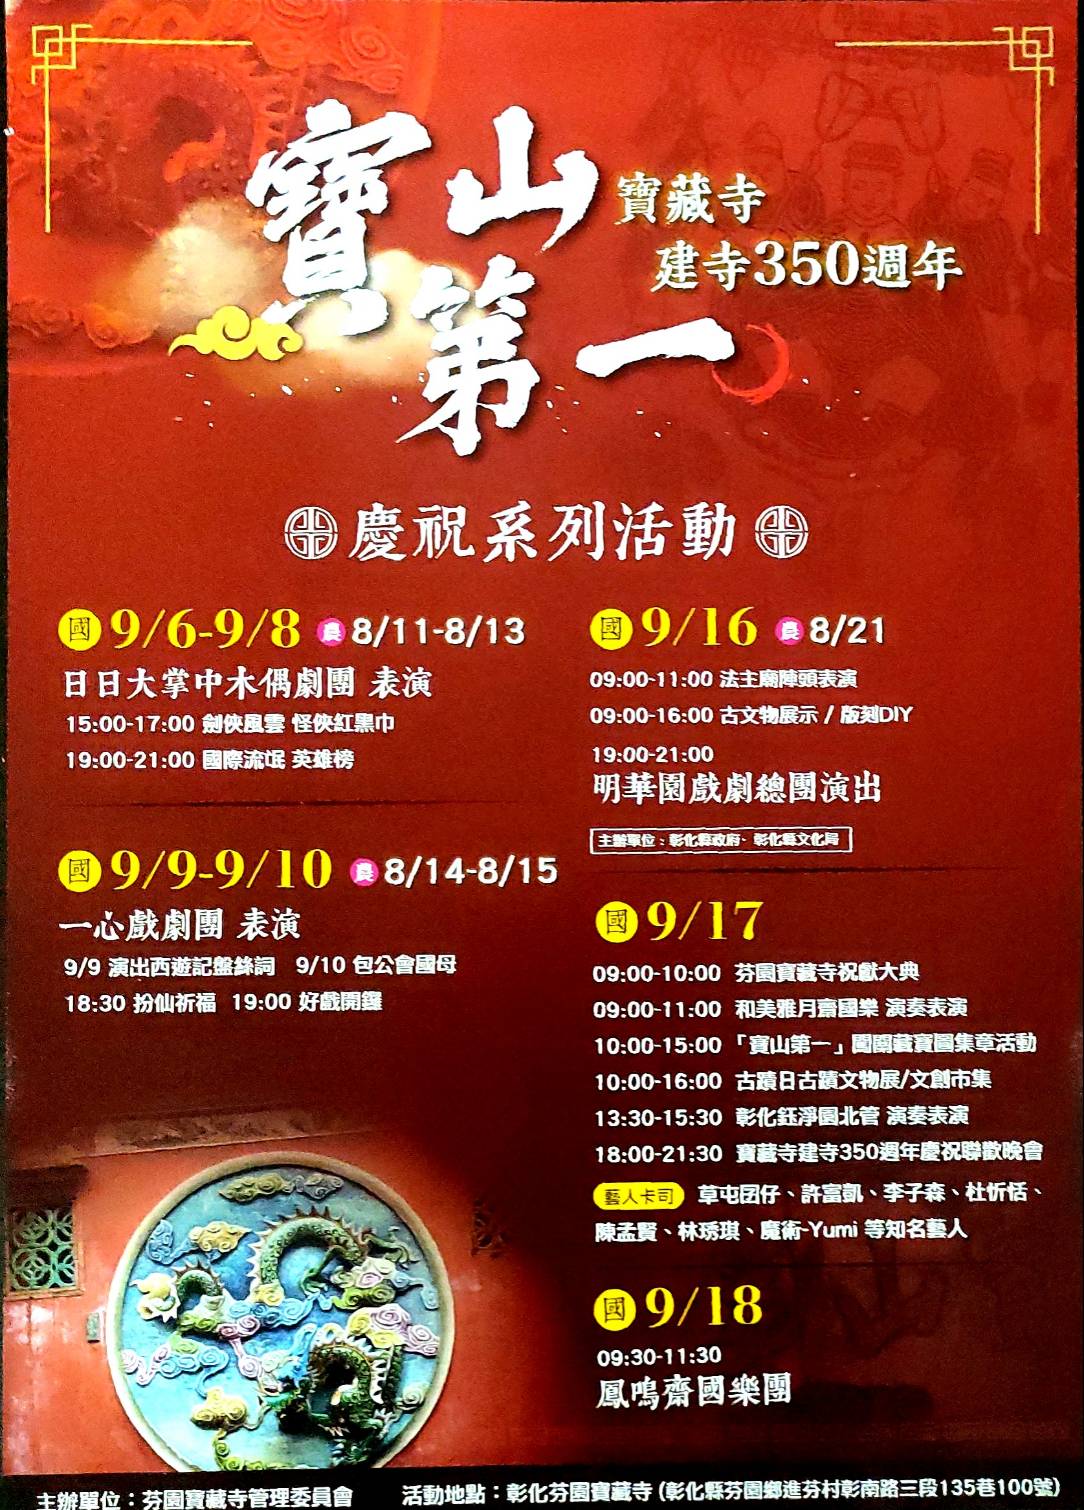 寶山第一 寶藏寺建寺350週年 慶祝系列活動